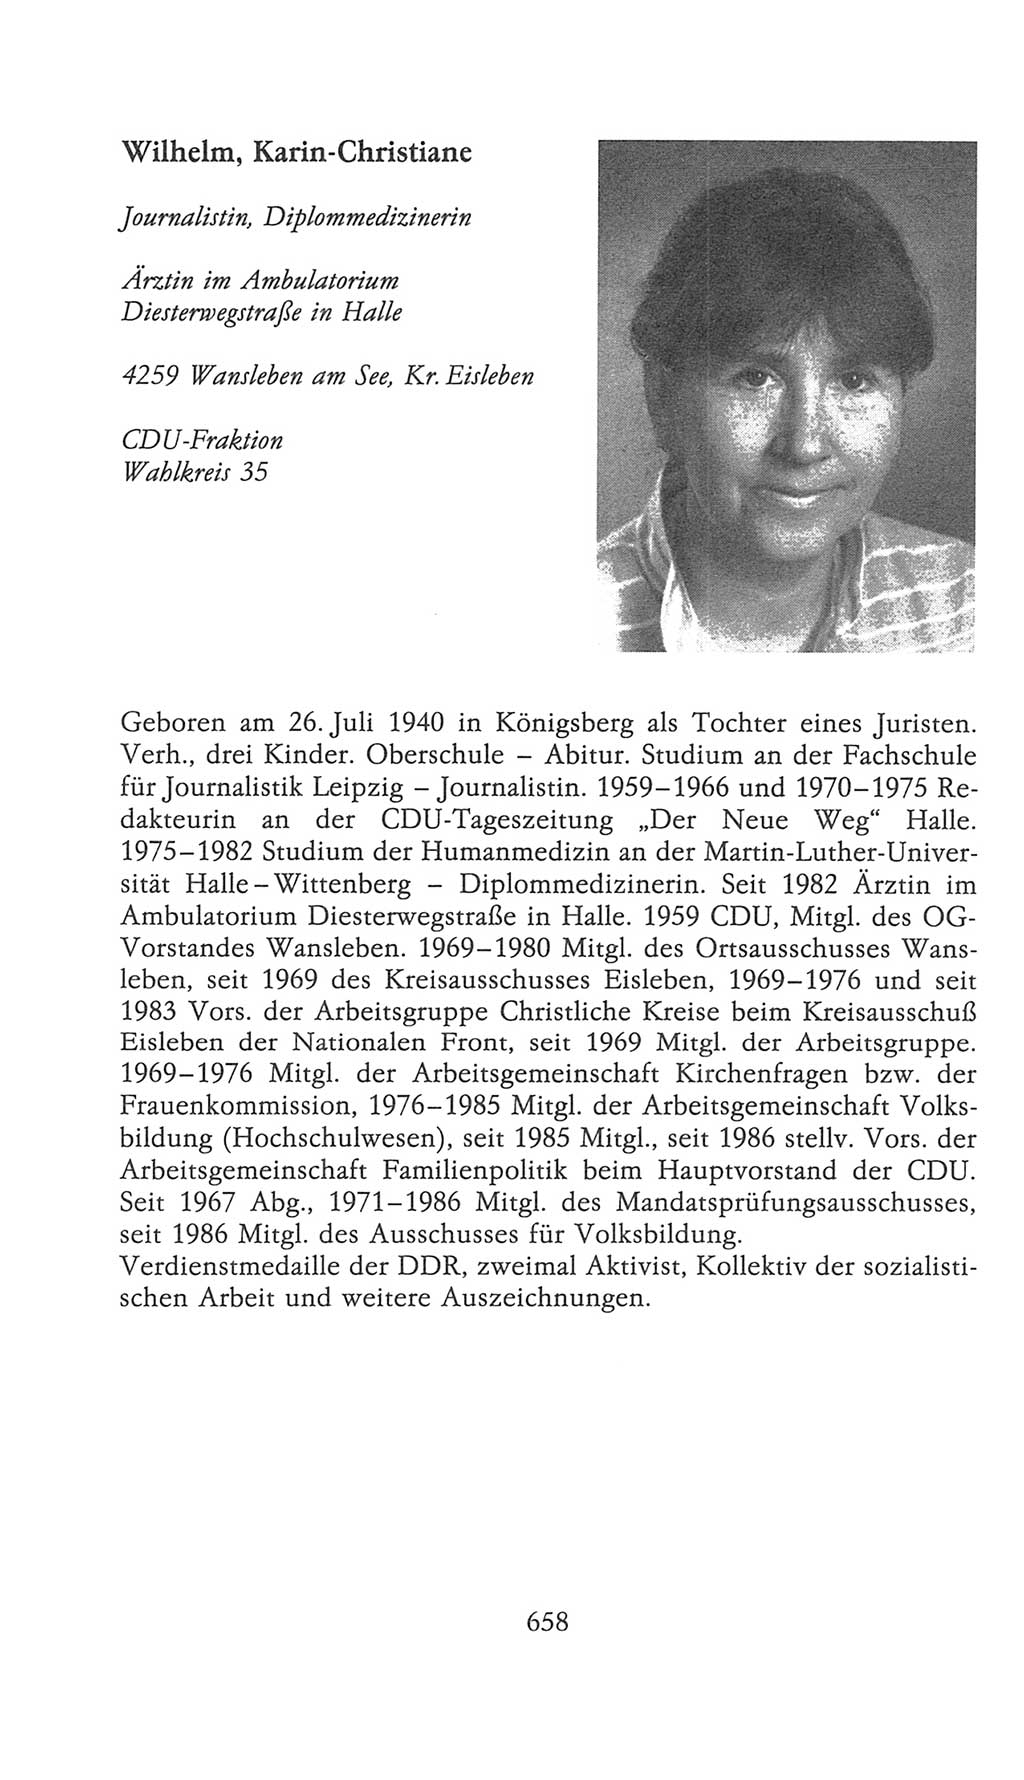 Volkskammer (VK) der Deutschen Demokratischen Republik (DDR), 9. Wahlperiode 1986-1990, Seite 658 (VK. DDR 9. WP. 1986-1990, S. 658)